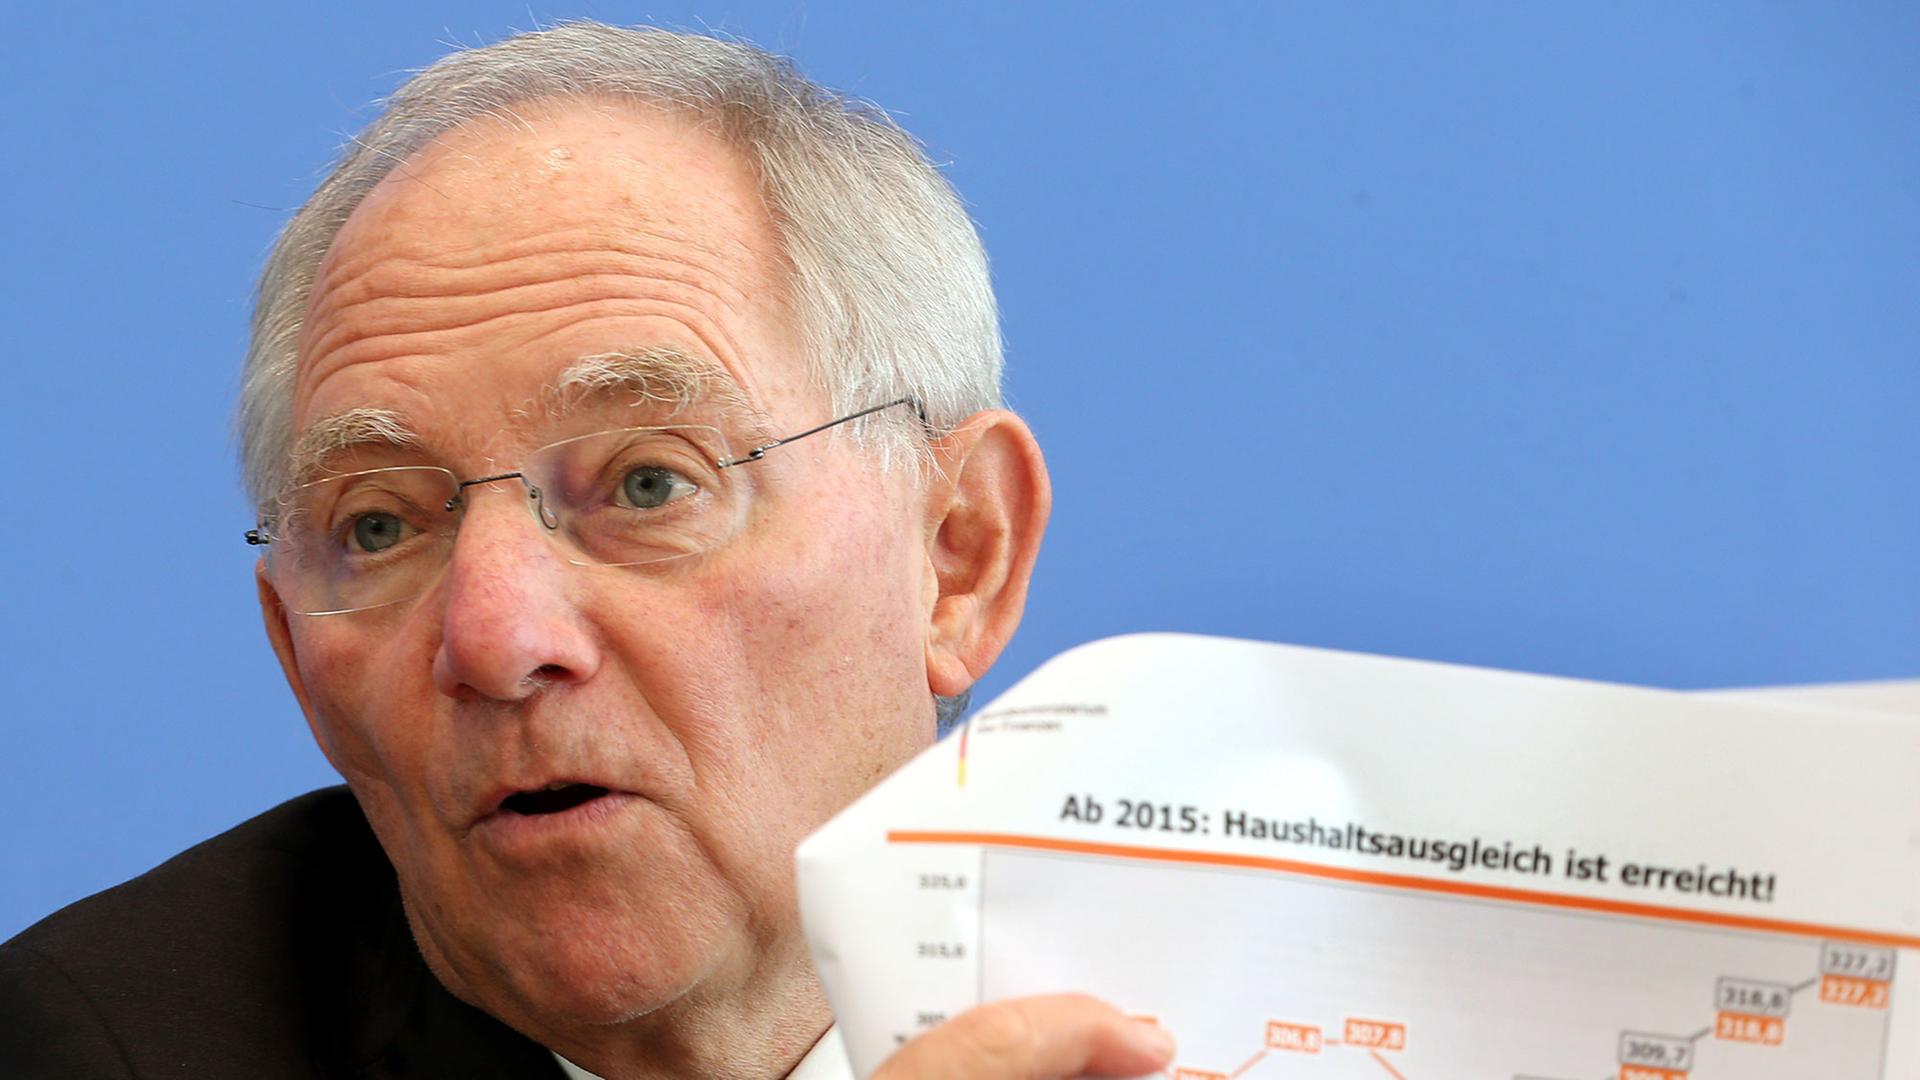 Bundesfinanzminister Wolfgang Schäuble (CDU) beantwortet vor der Bundespressekonferenz in Berlin Fragen von Journalisten und hält eine ausgedruckte Grafik mit dem Titel "Ab 2015: Haushaltsausgleich ist erreicht!" hoch.